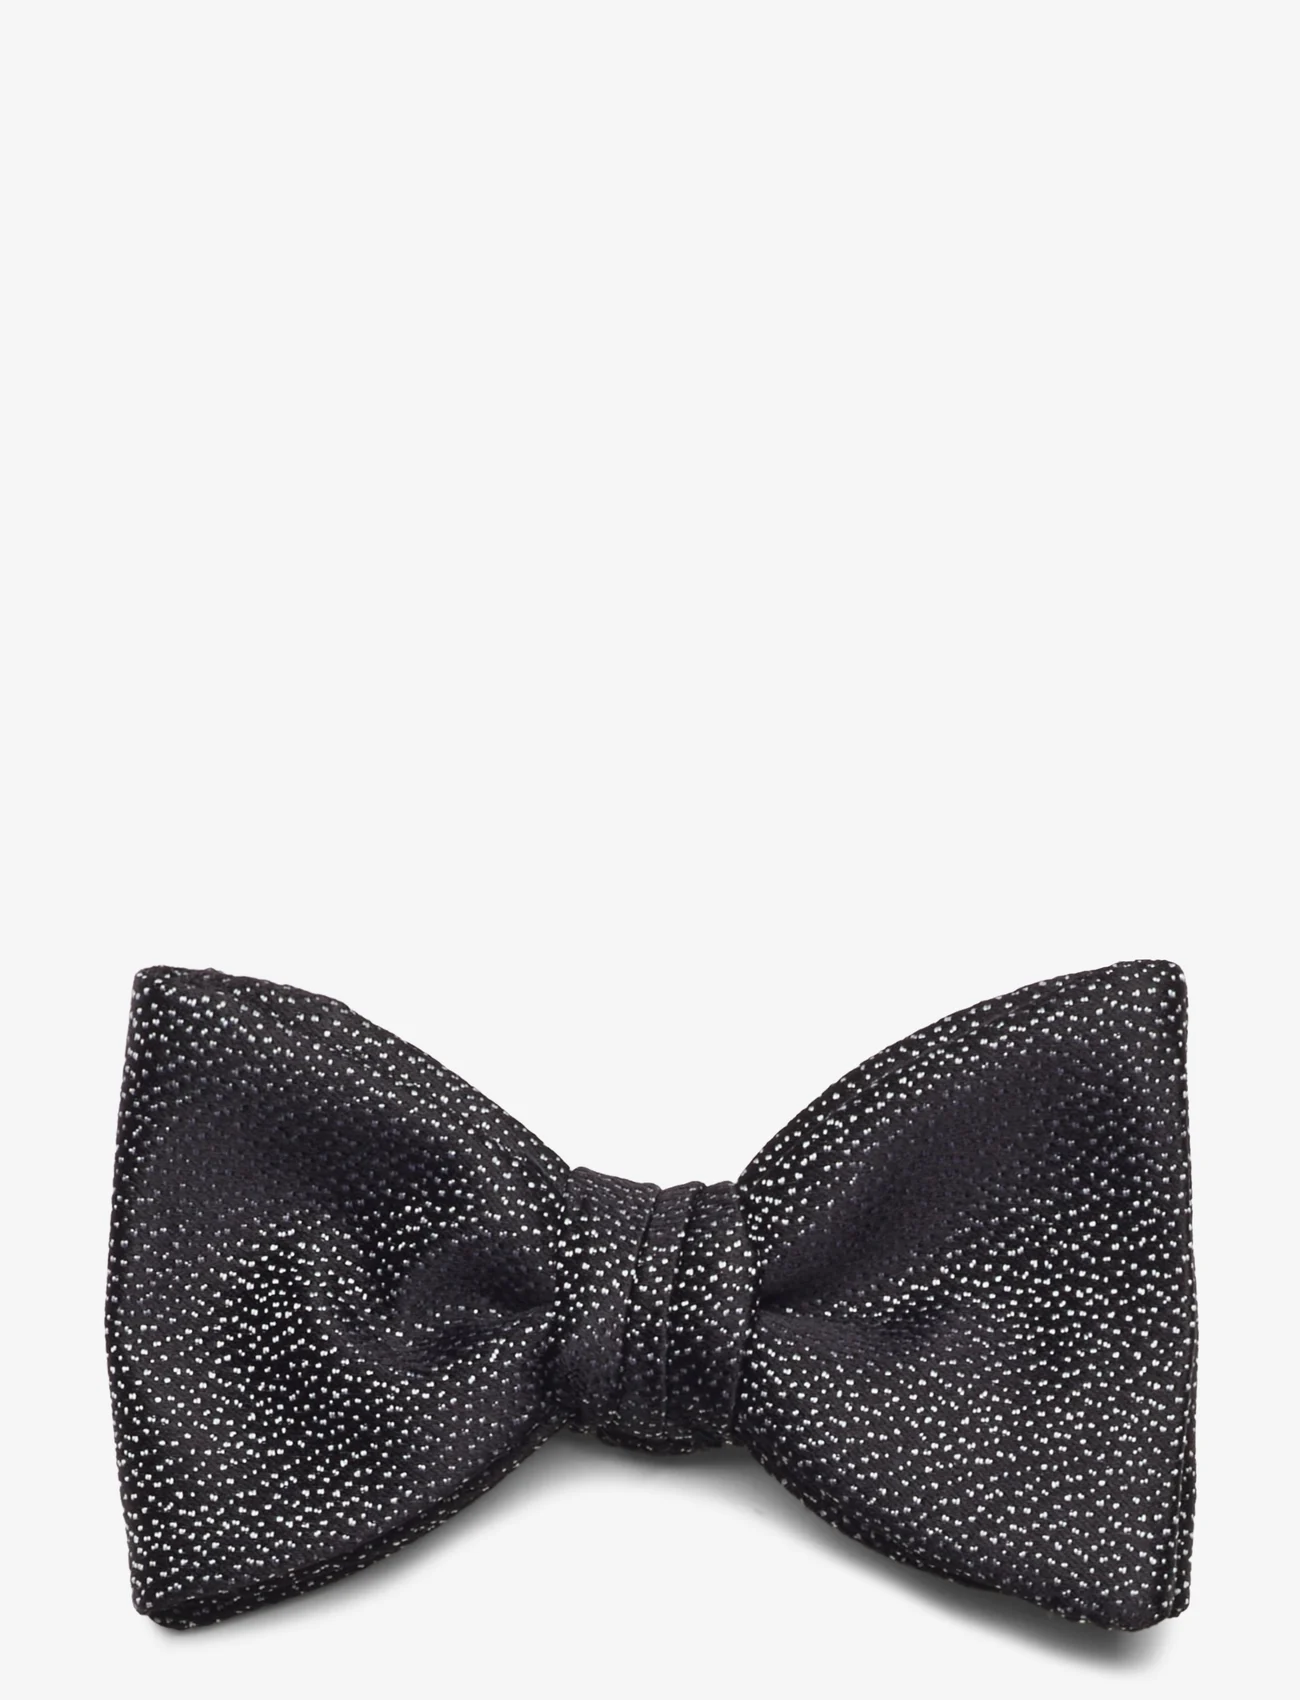 HUGO - Bow tie dressy - muchy - black - 0